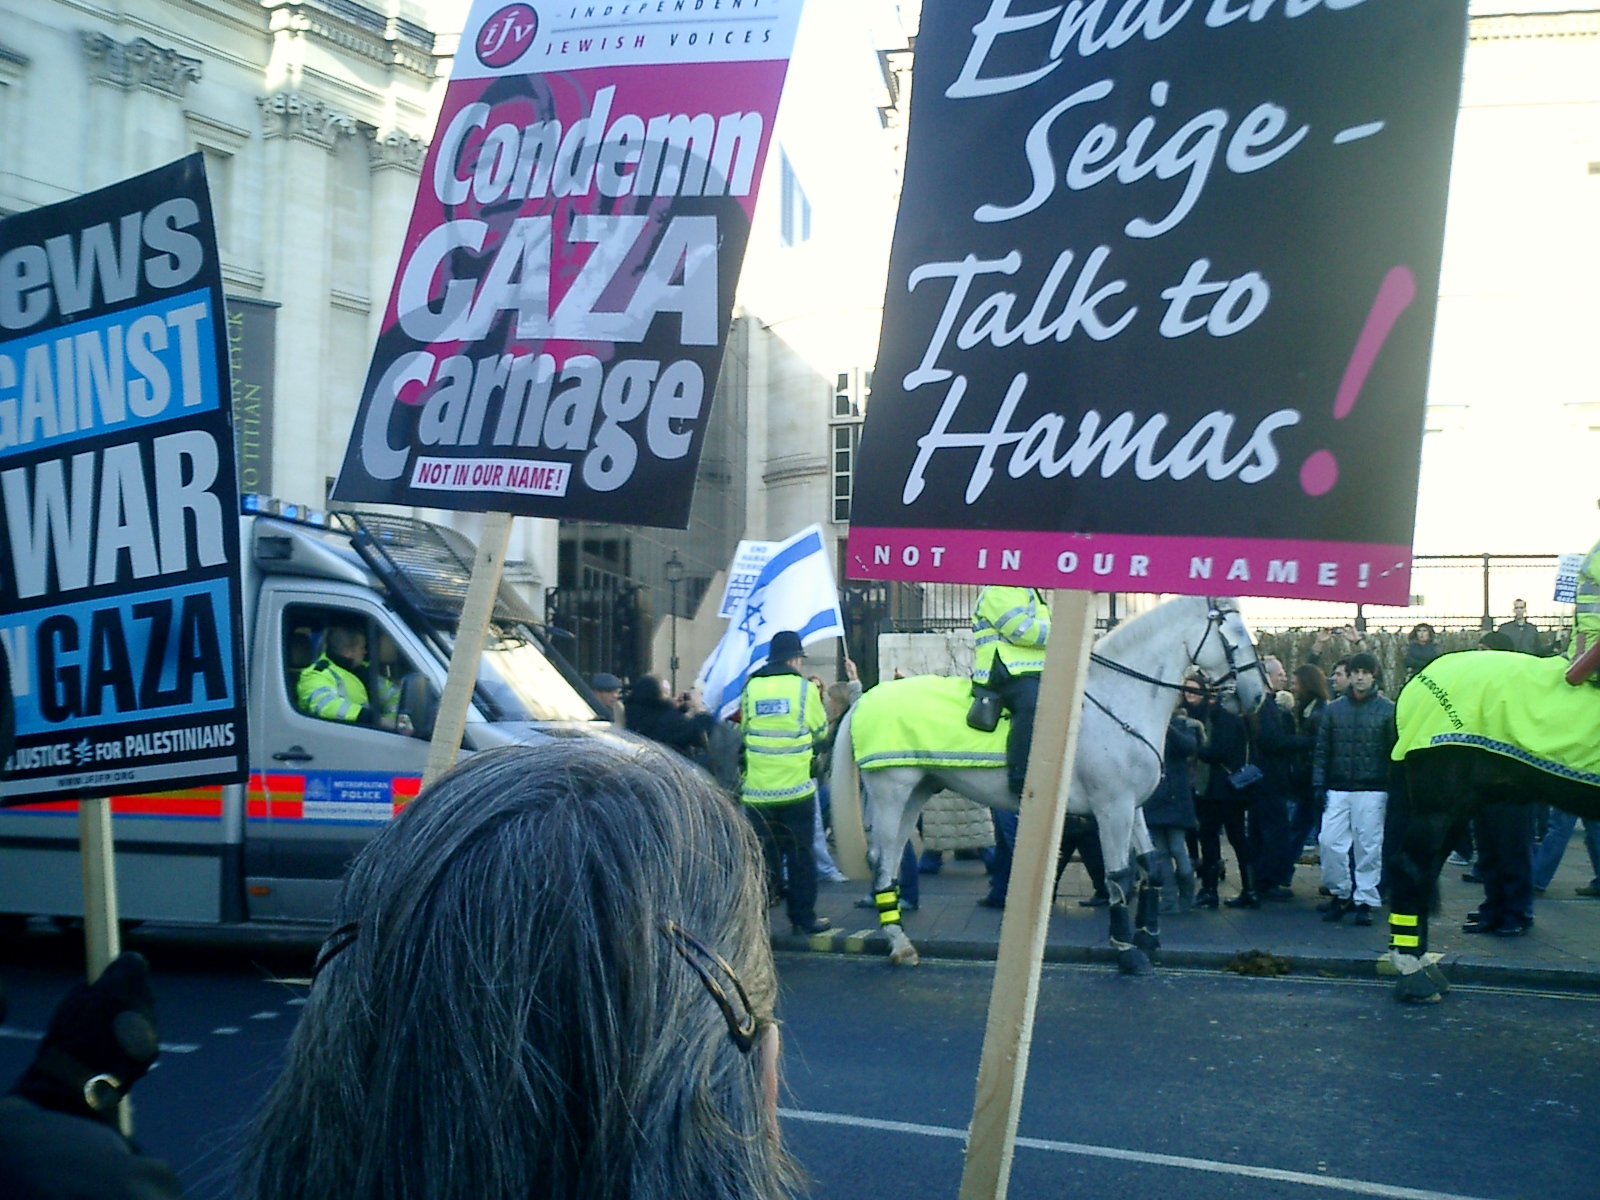 Counter-protest, Trafalgar Square, 11 Jan 09 - Picture 4